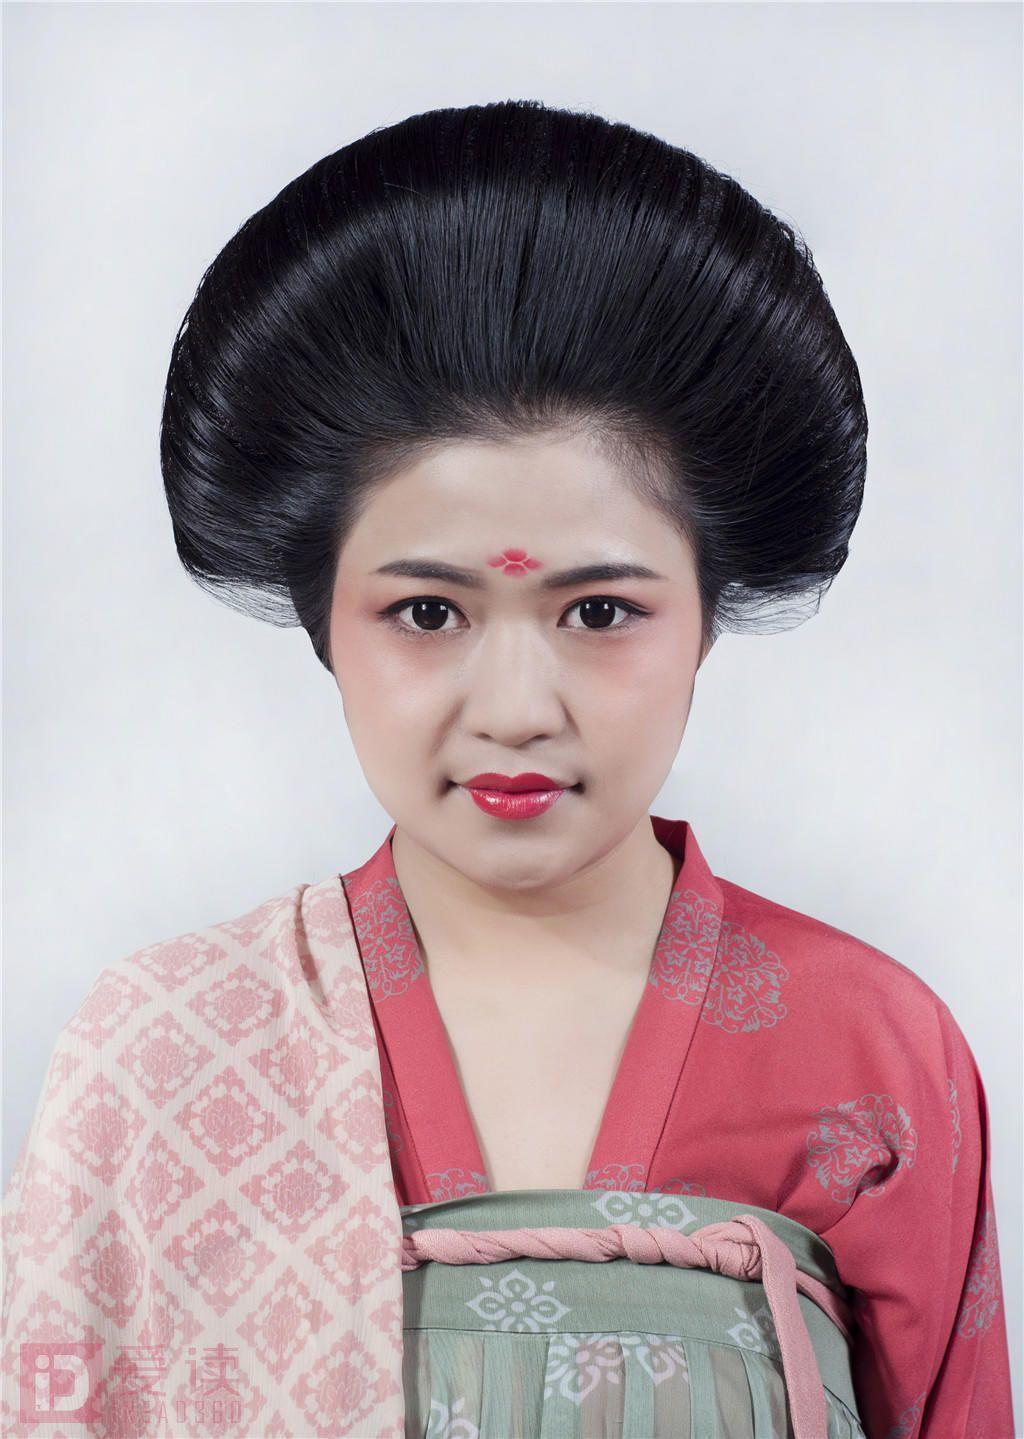 古装影视发型之唐朝贵族妇人造型 